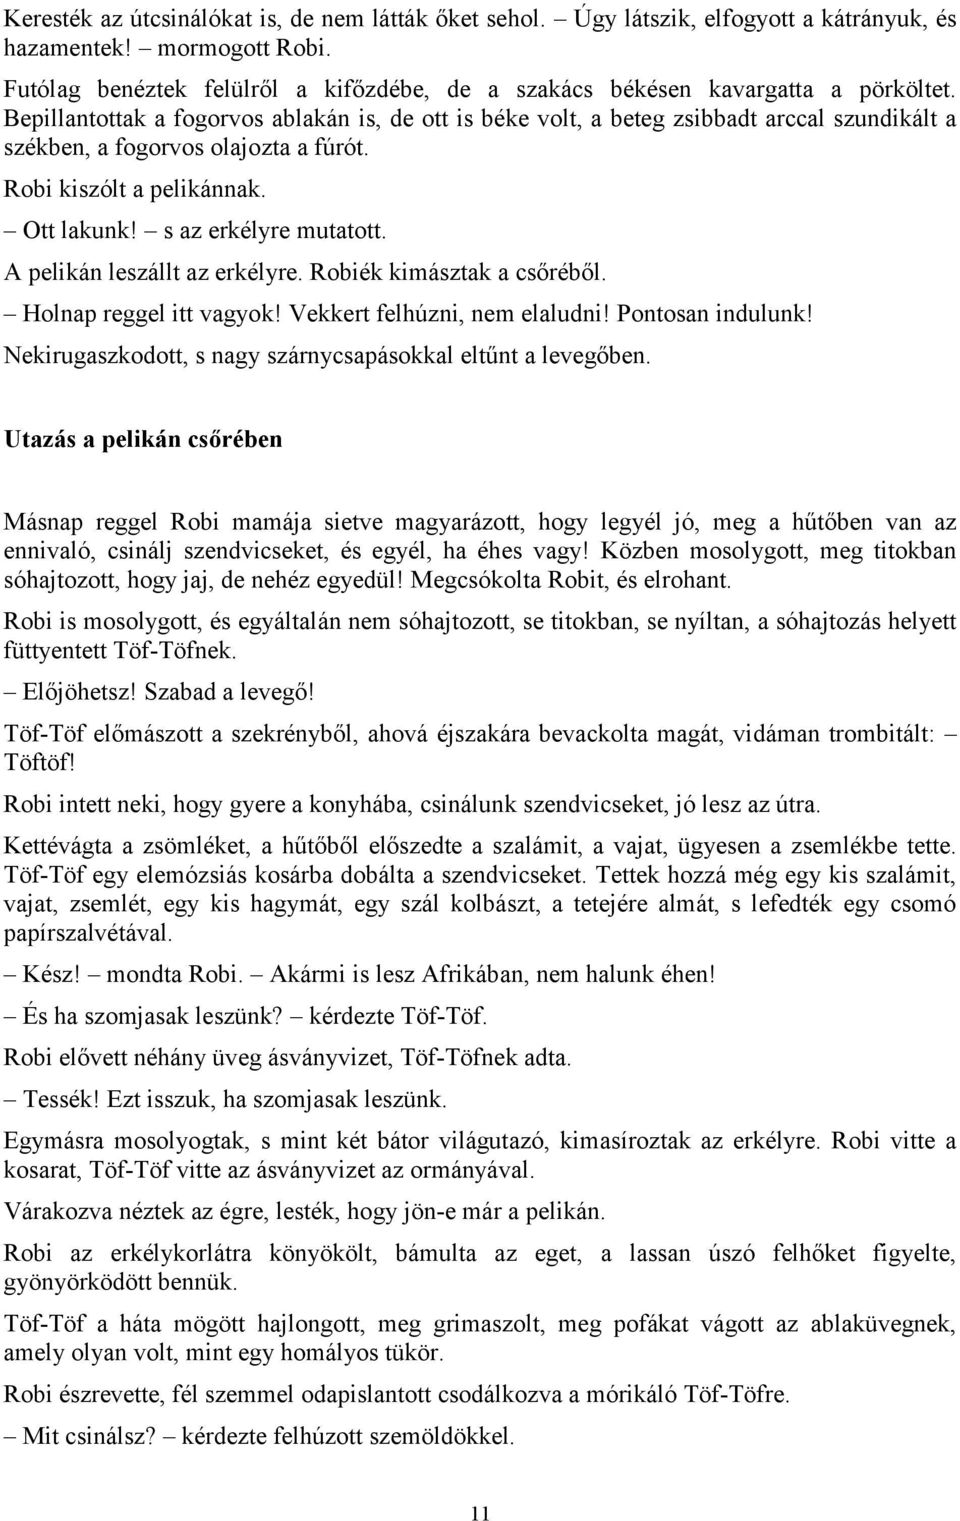 Csukás István: Töf-töf az elefánt - PDF Free Download